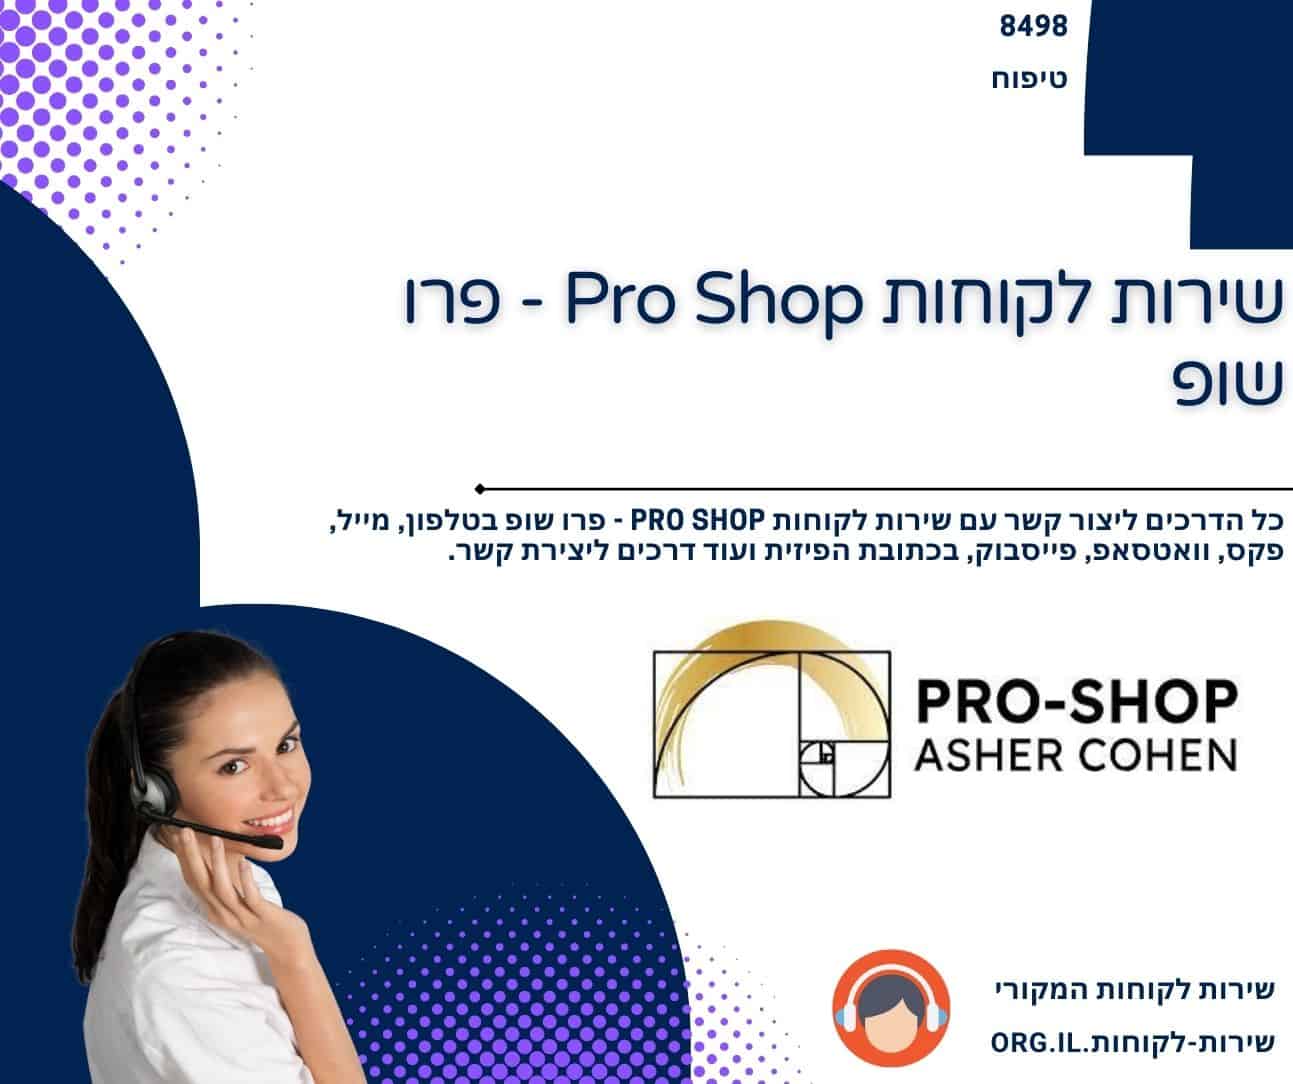 שירות לקוחות Pro Shop - פרו שופ